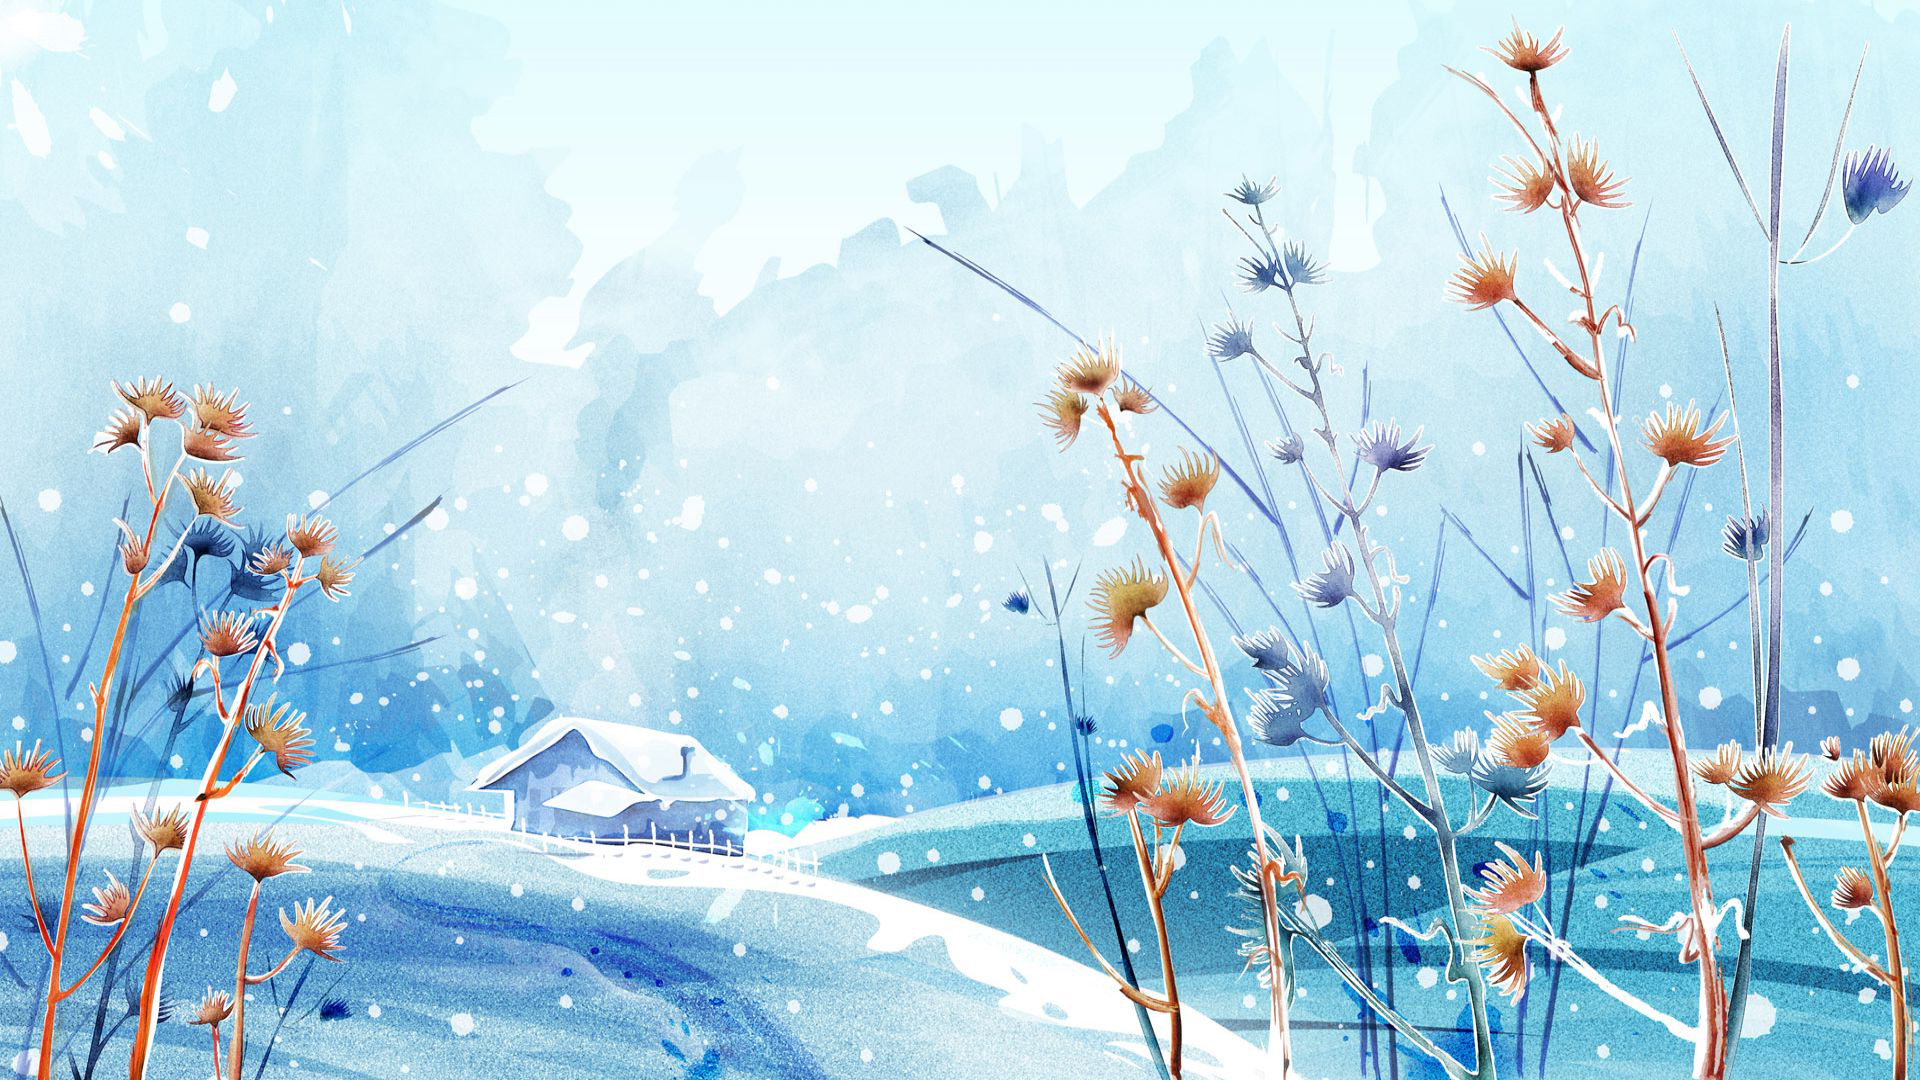 애니메이션 겨울 벽지,수채화 물감,하늘,식물,꽃,야생화